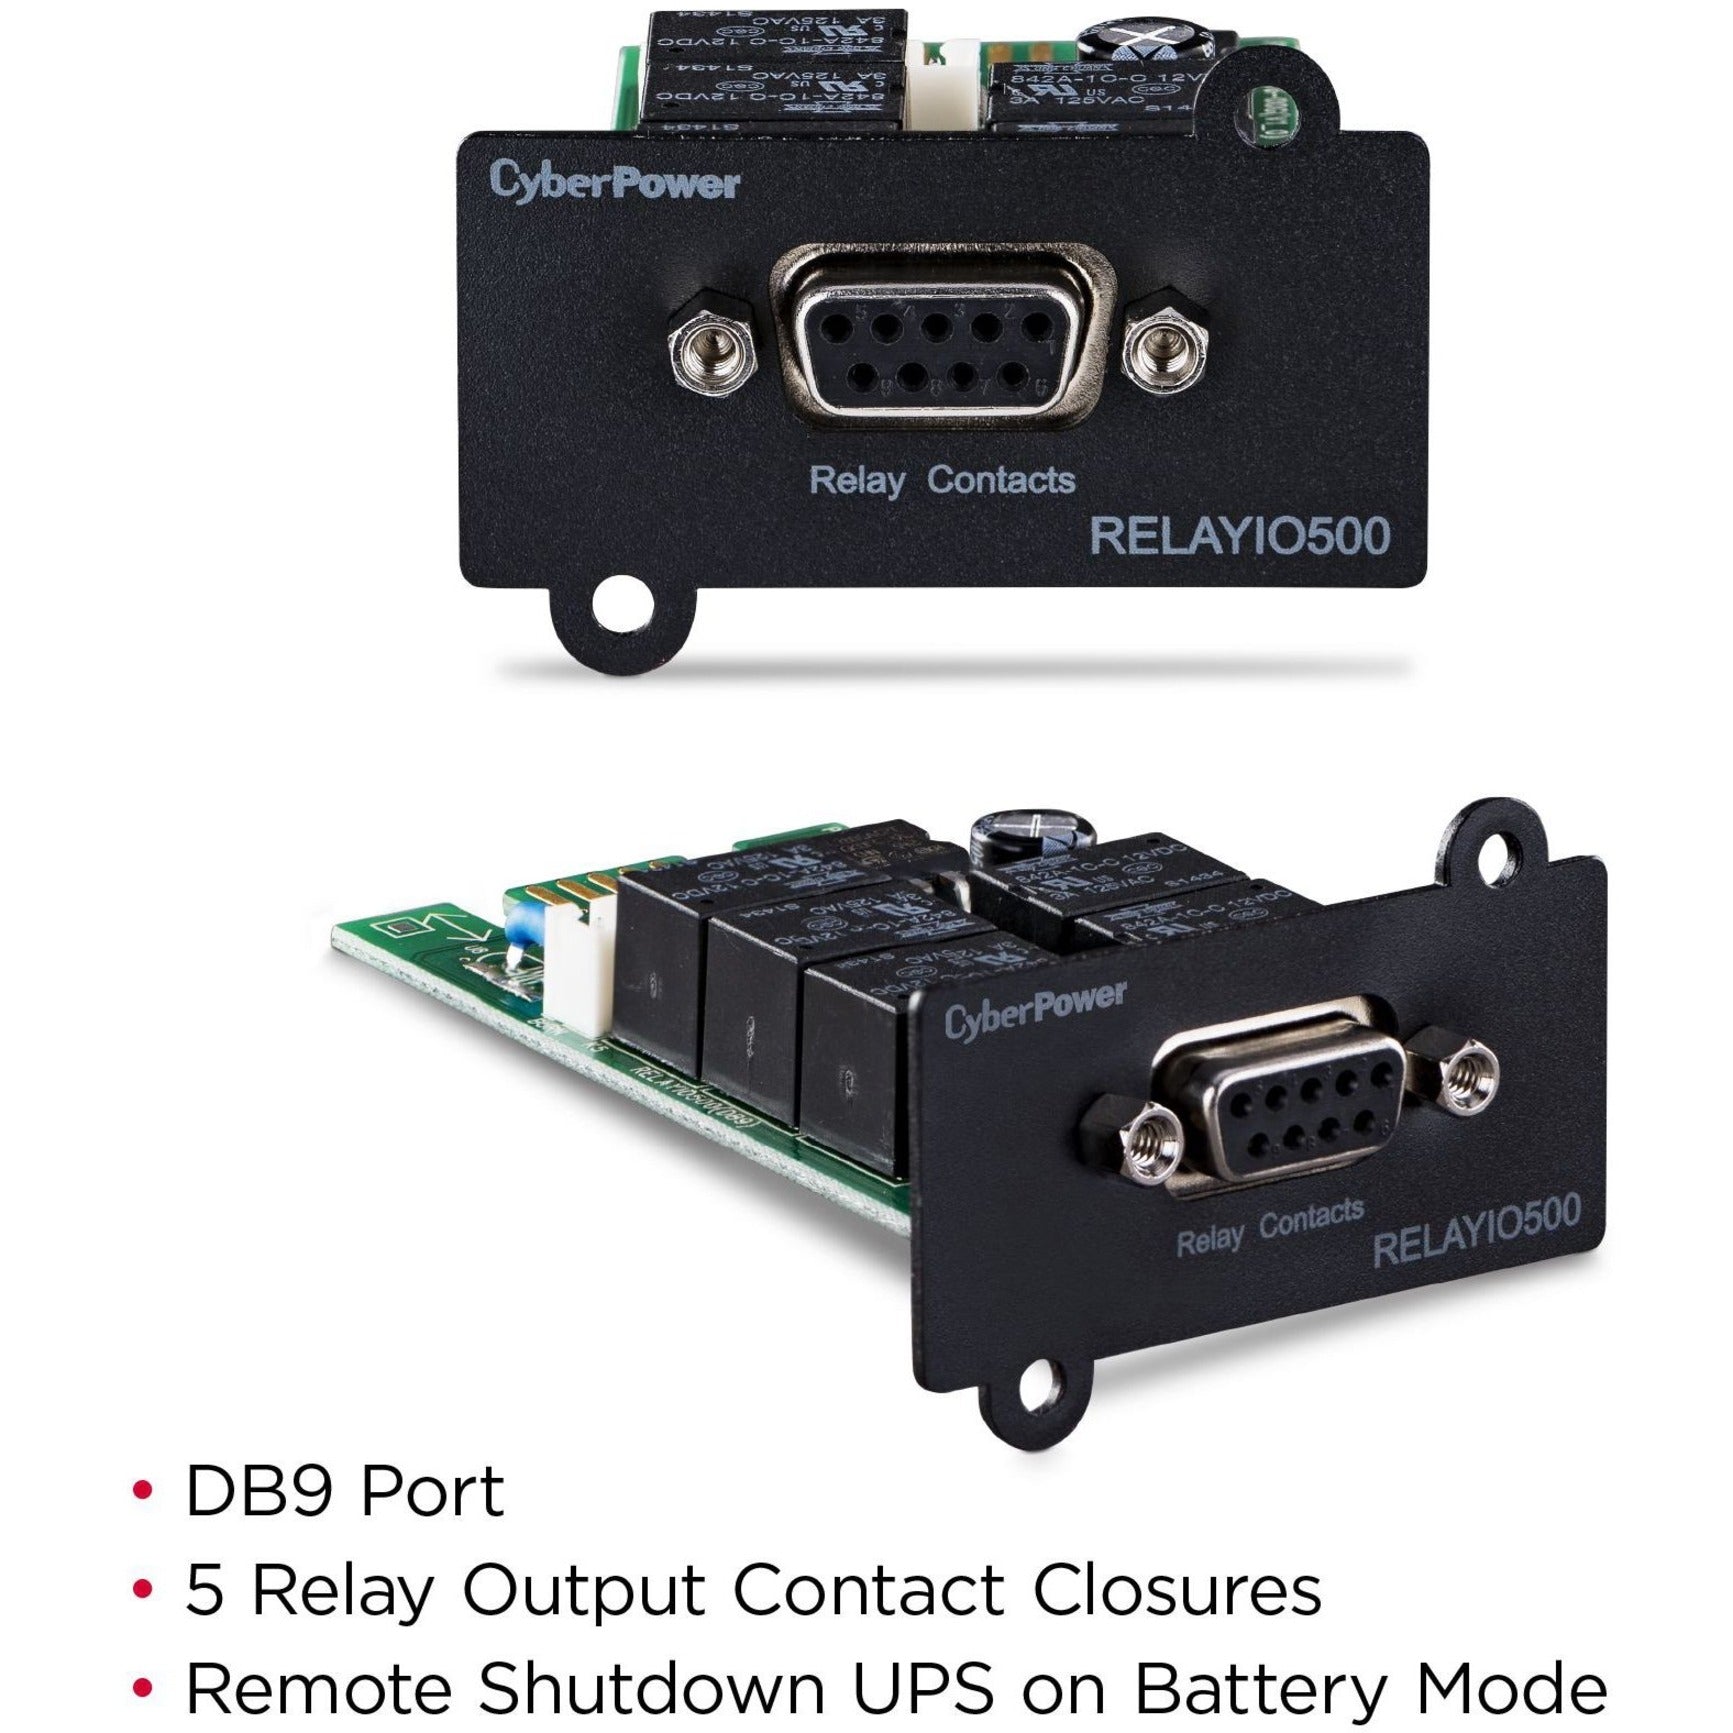 赛博力 RELAYIO500 远程电源管理适配器，3年保修，串行接口 品牌名称：赛博力